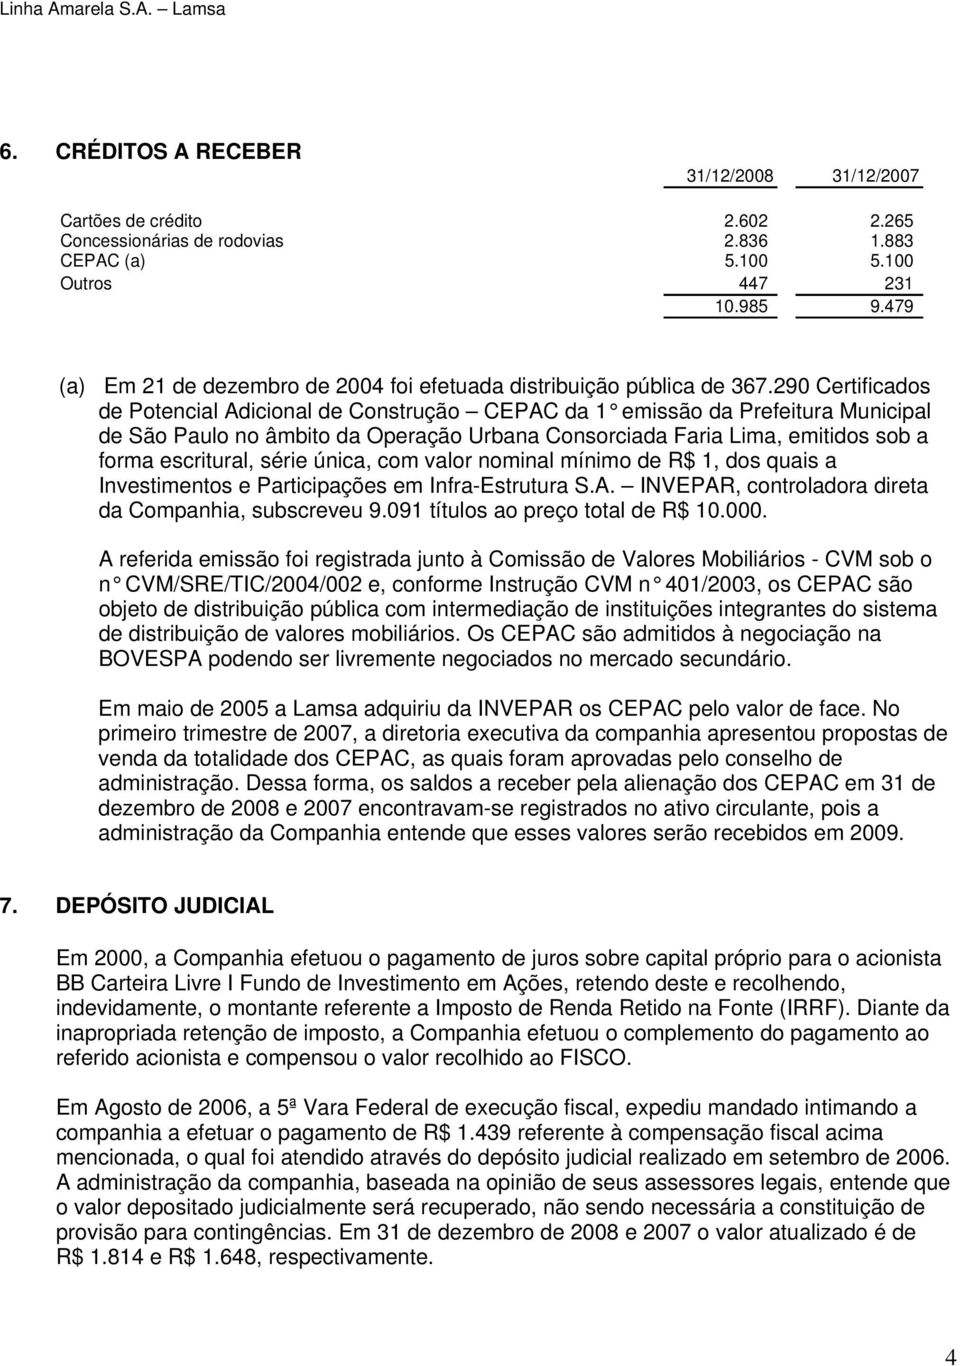 290 Certificados de Potencial Adicional de Construção CEPAC da 1 emissão da Prefeitura Municipal de São Paulo no âmbito da Operação Urbana Consorciada Faria Lima, emitidos sob a forma escritural,